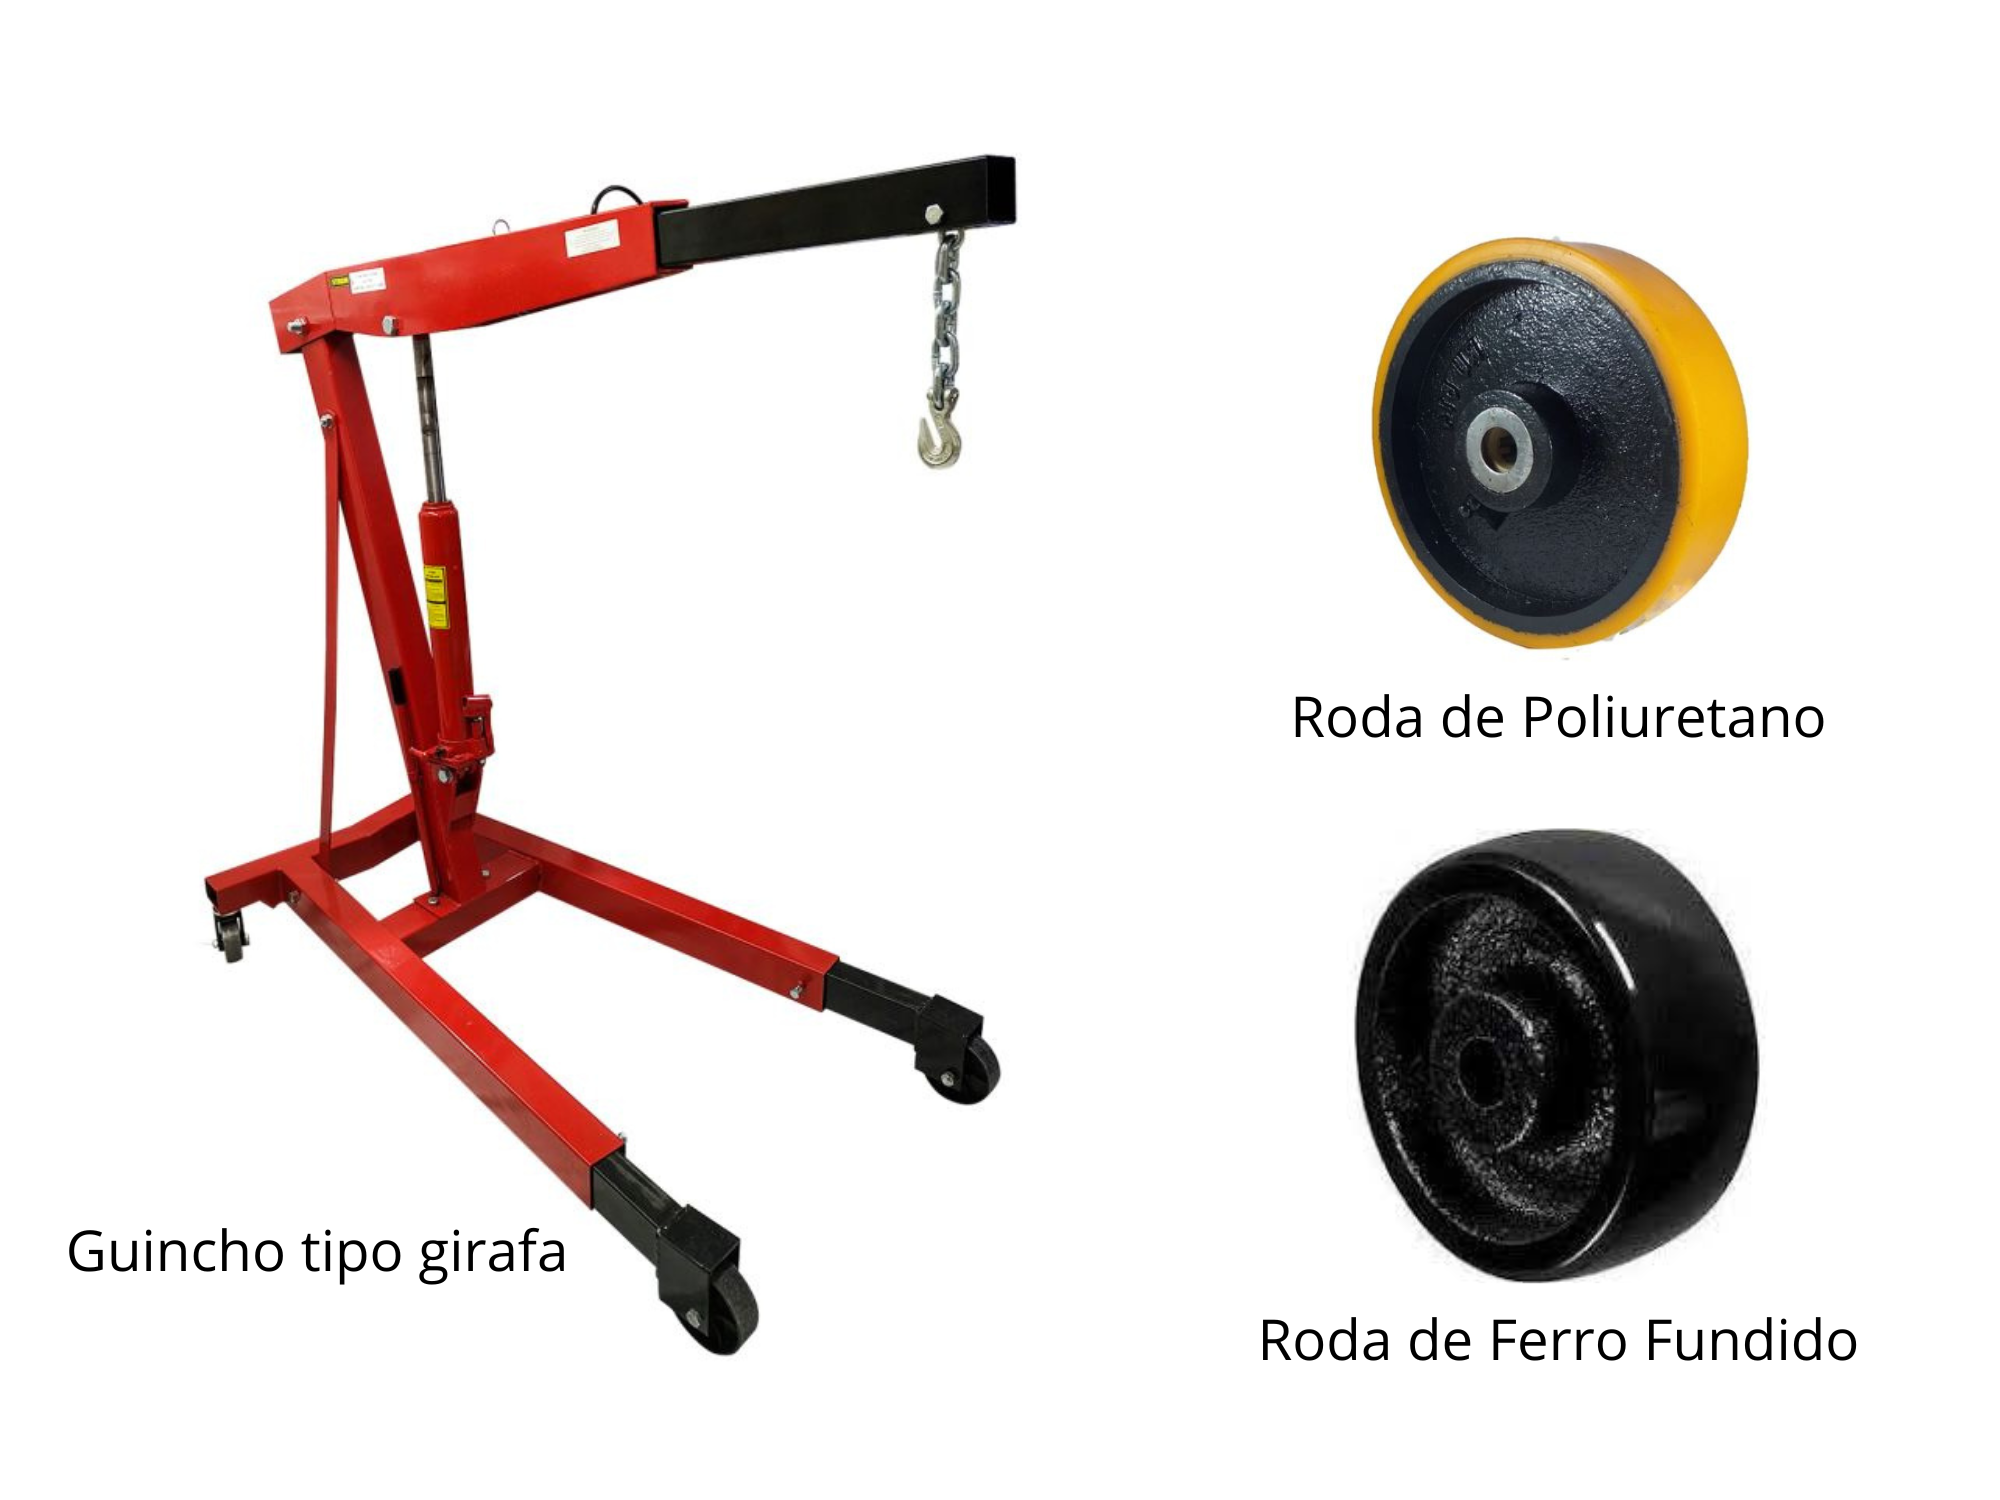 Imagem do guincho tipo girafa com uma roda de poliuretano e uma roda de ferro fundido.